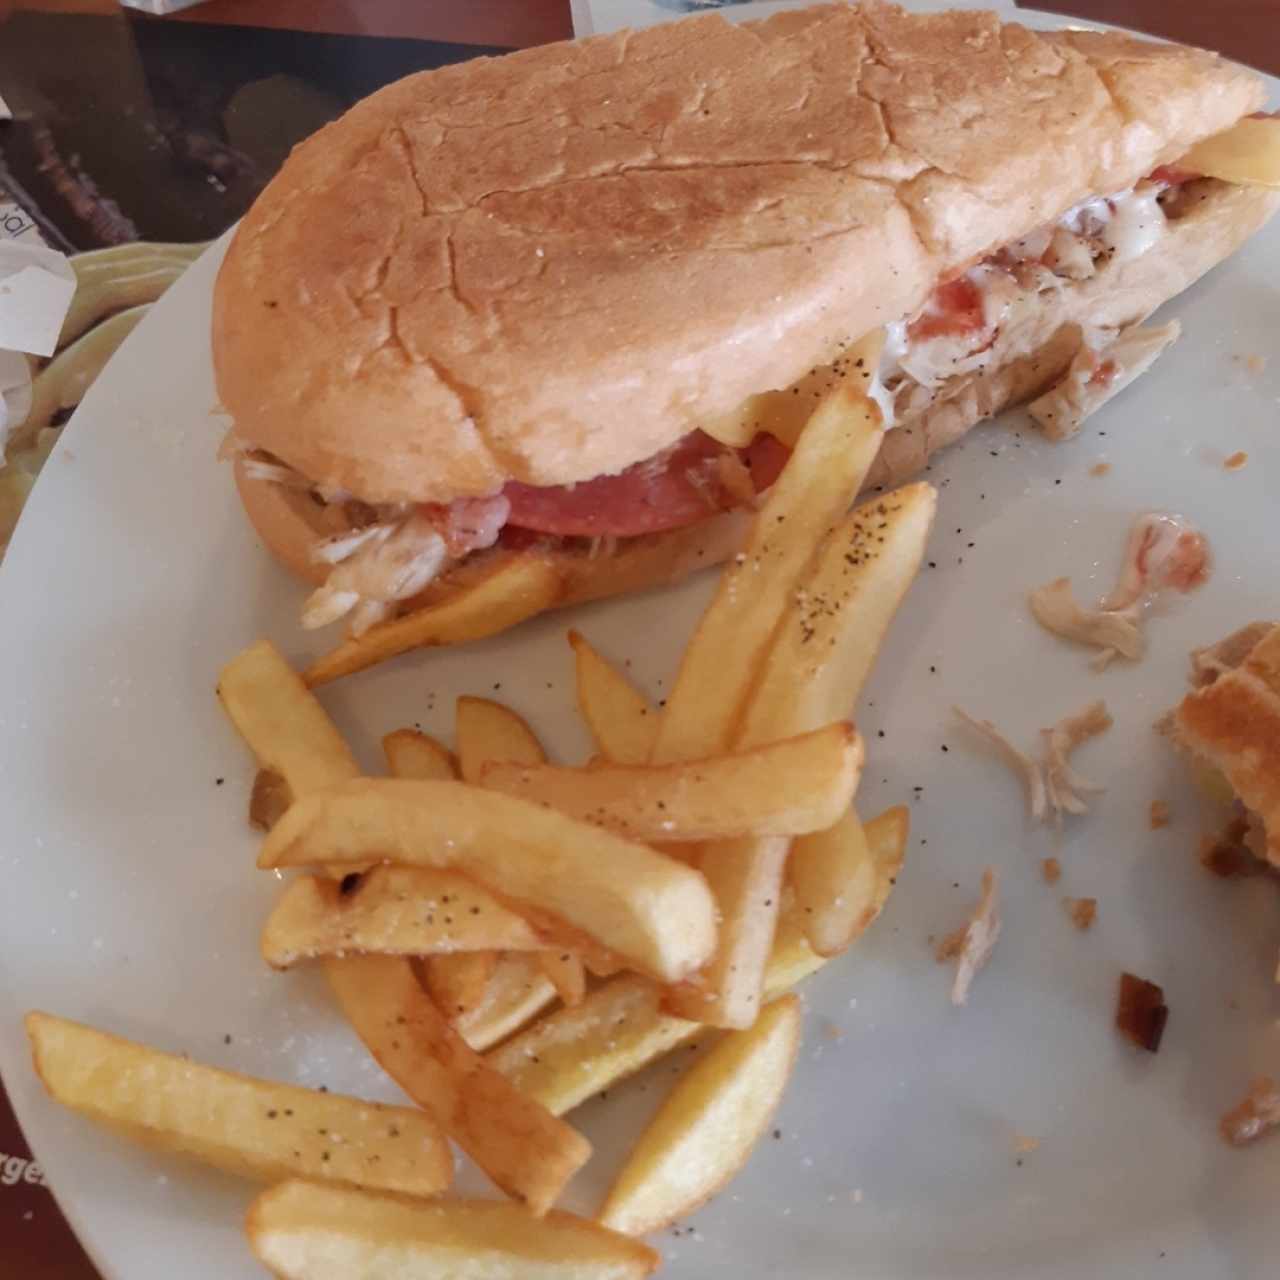 sándwich cubano (aquí la mitad del servicio)